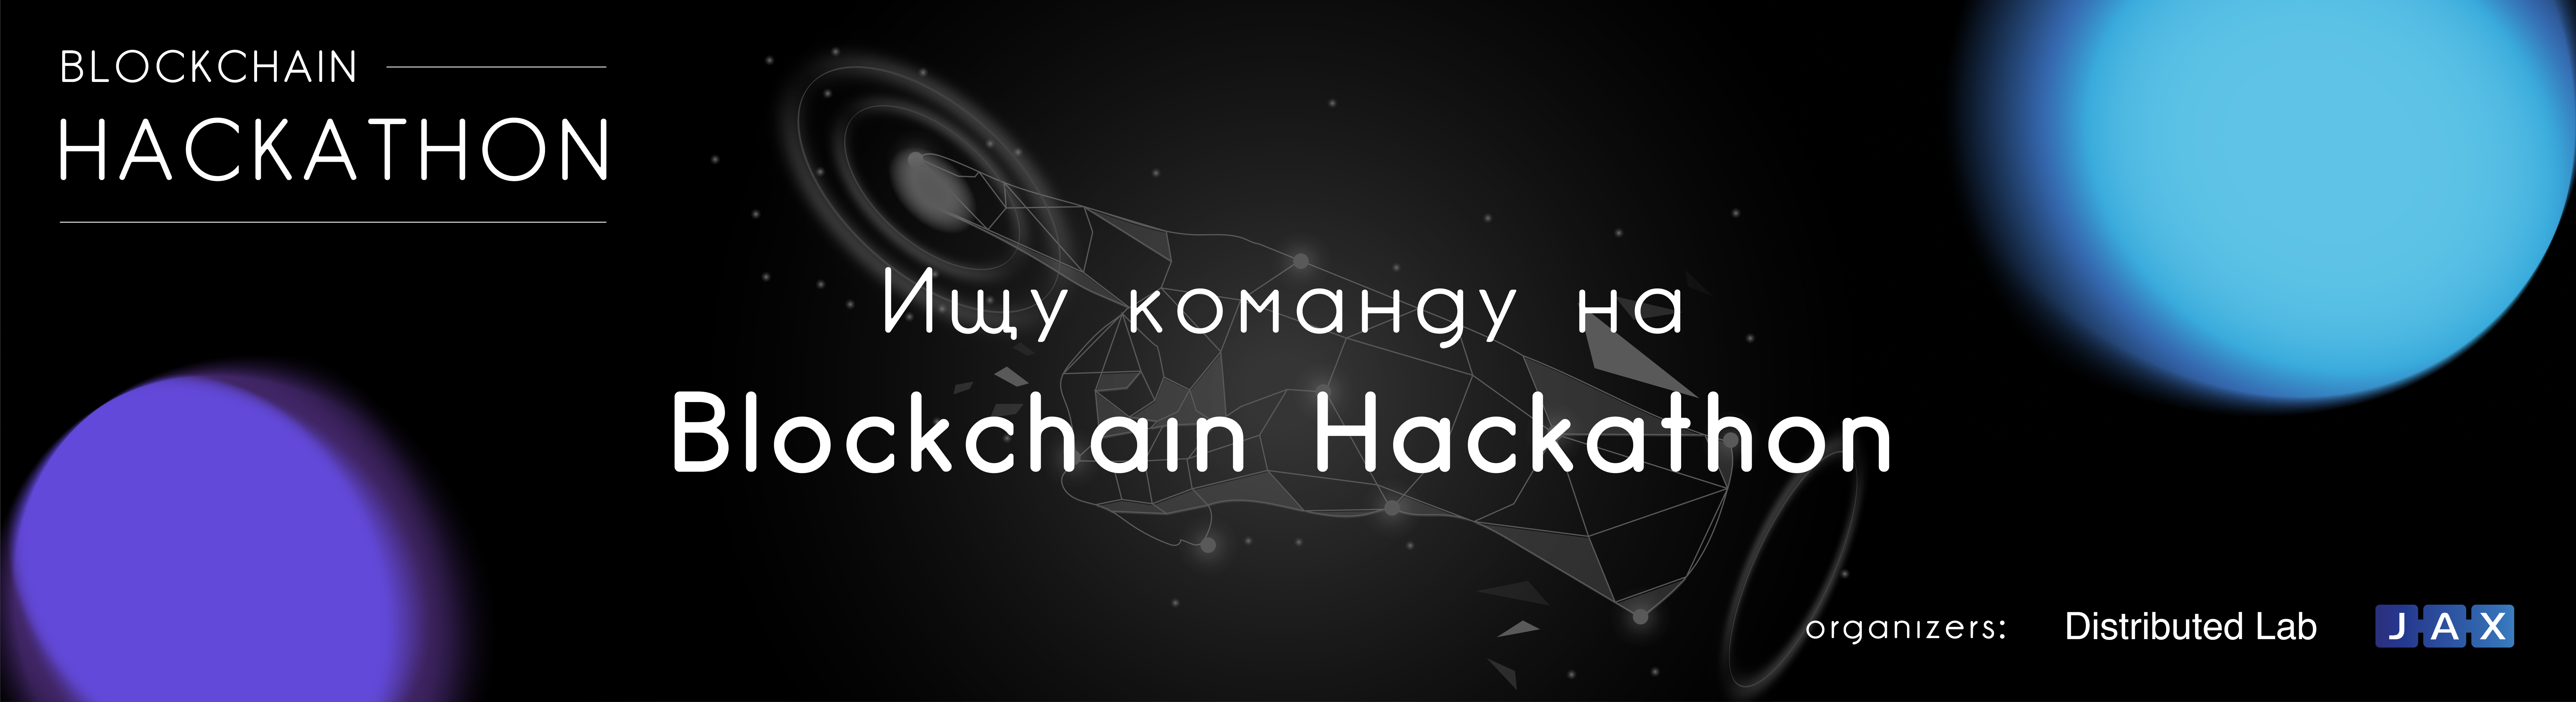 Всего неделя до Blockchain Hackathon!